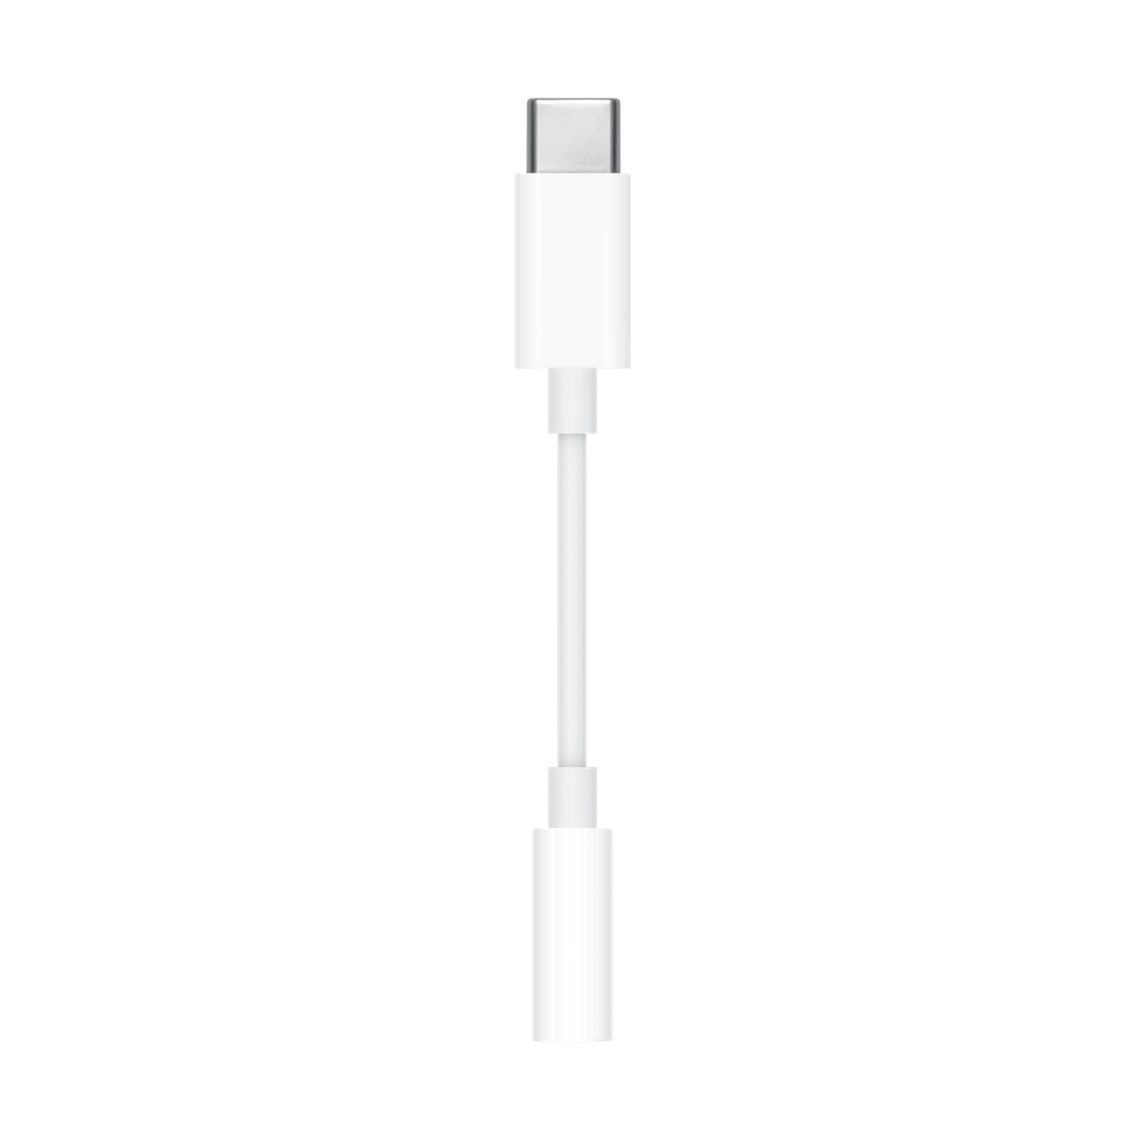 Apple USB-C to 3.5 mm Headphone Jack